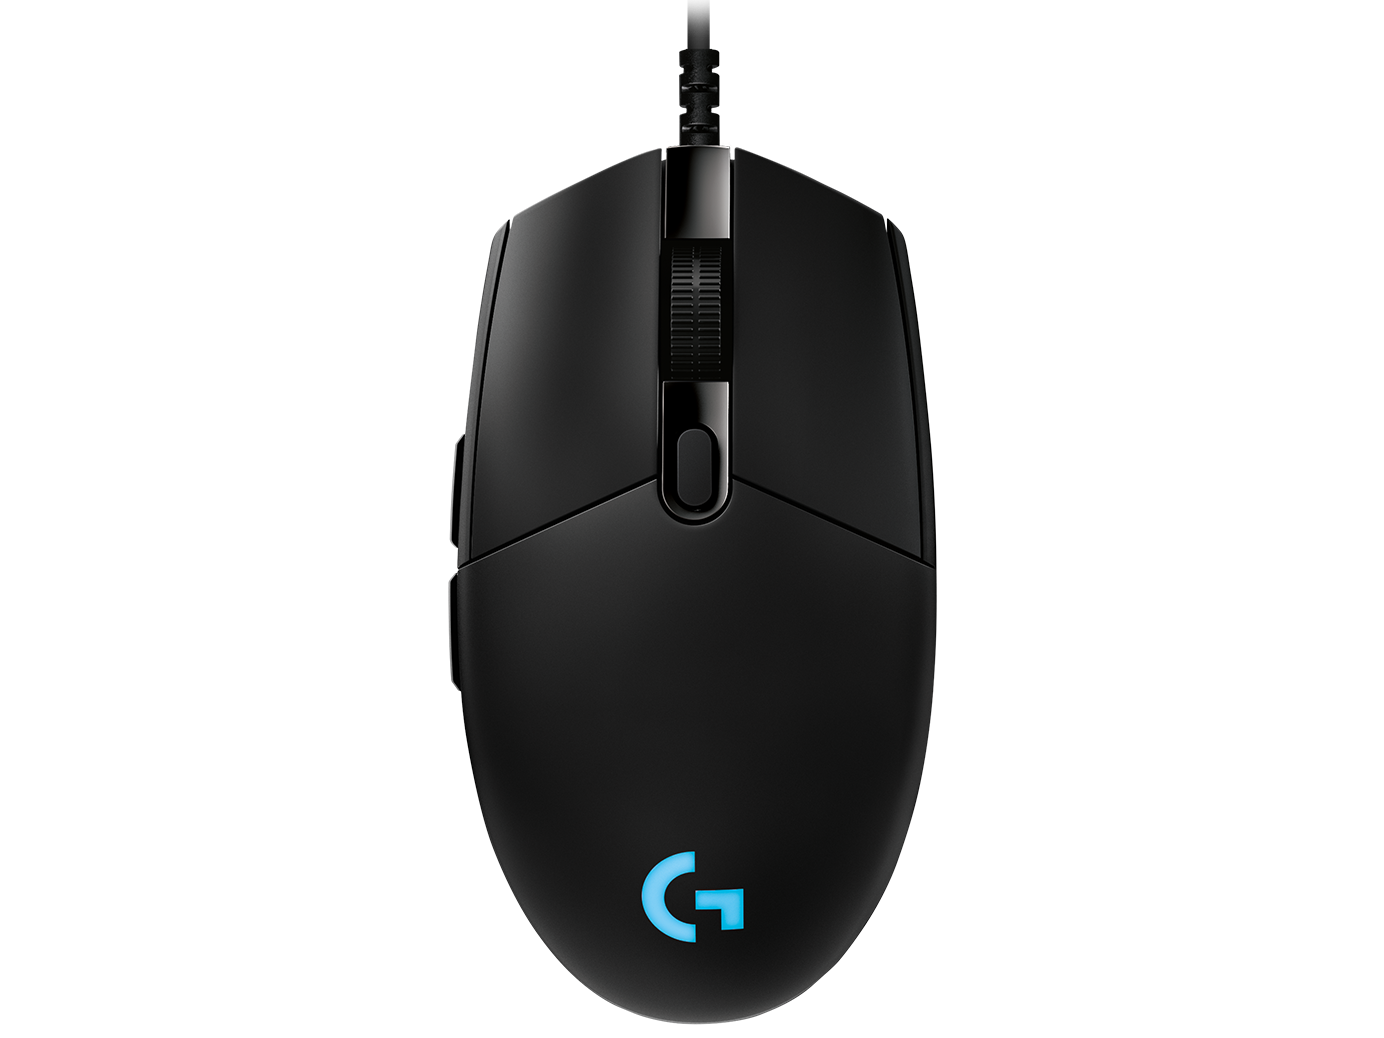 Aftensmad syreindhold Blive opmærksom Logitech G Pro Gaming Mouse with HERO 25K Sensor for Esports